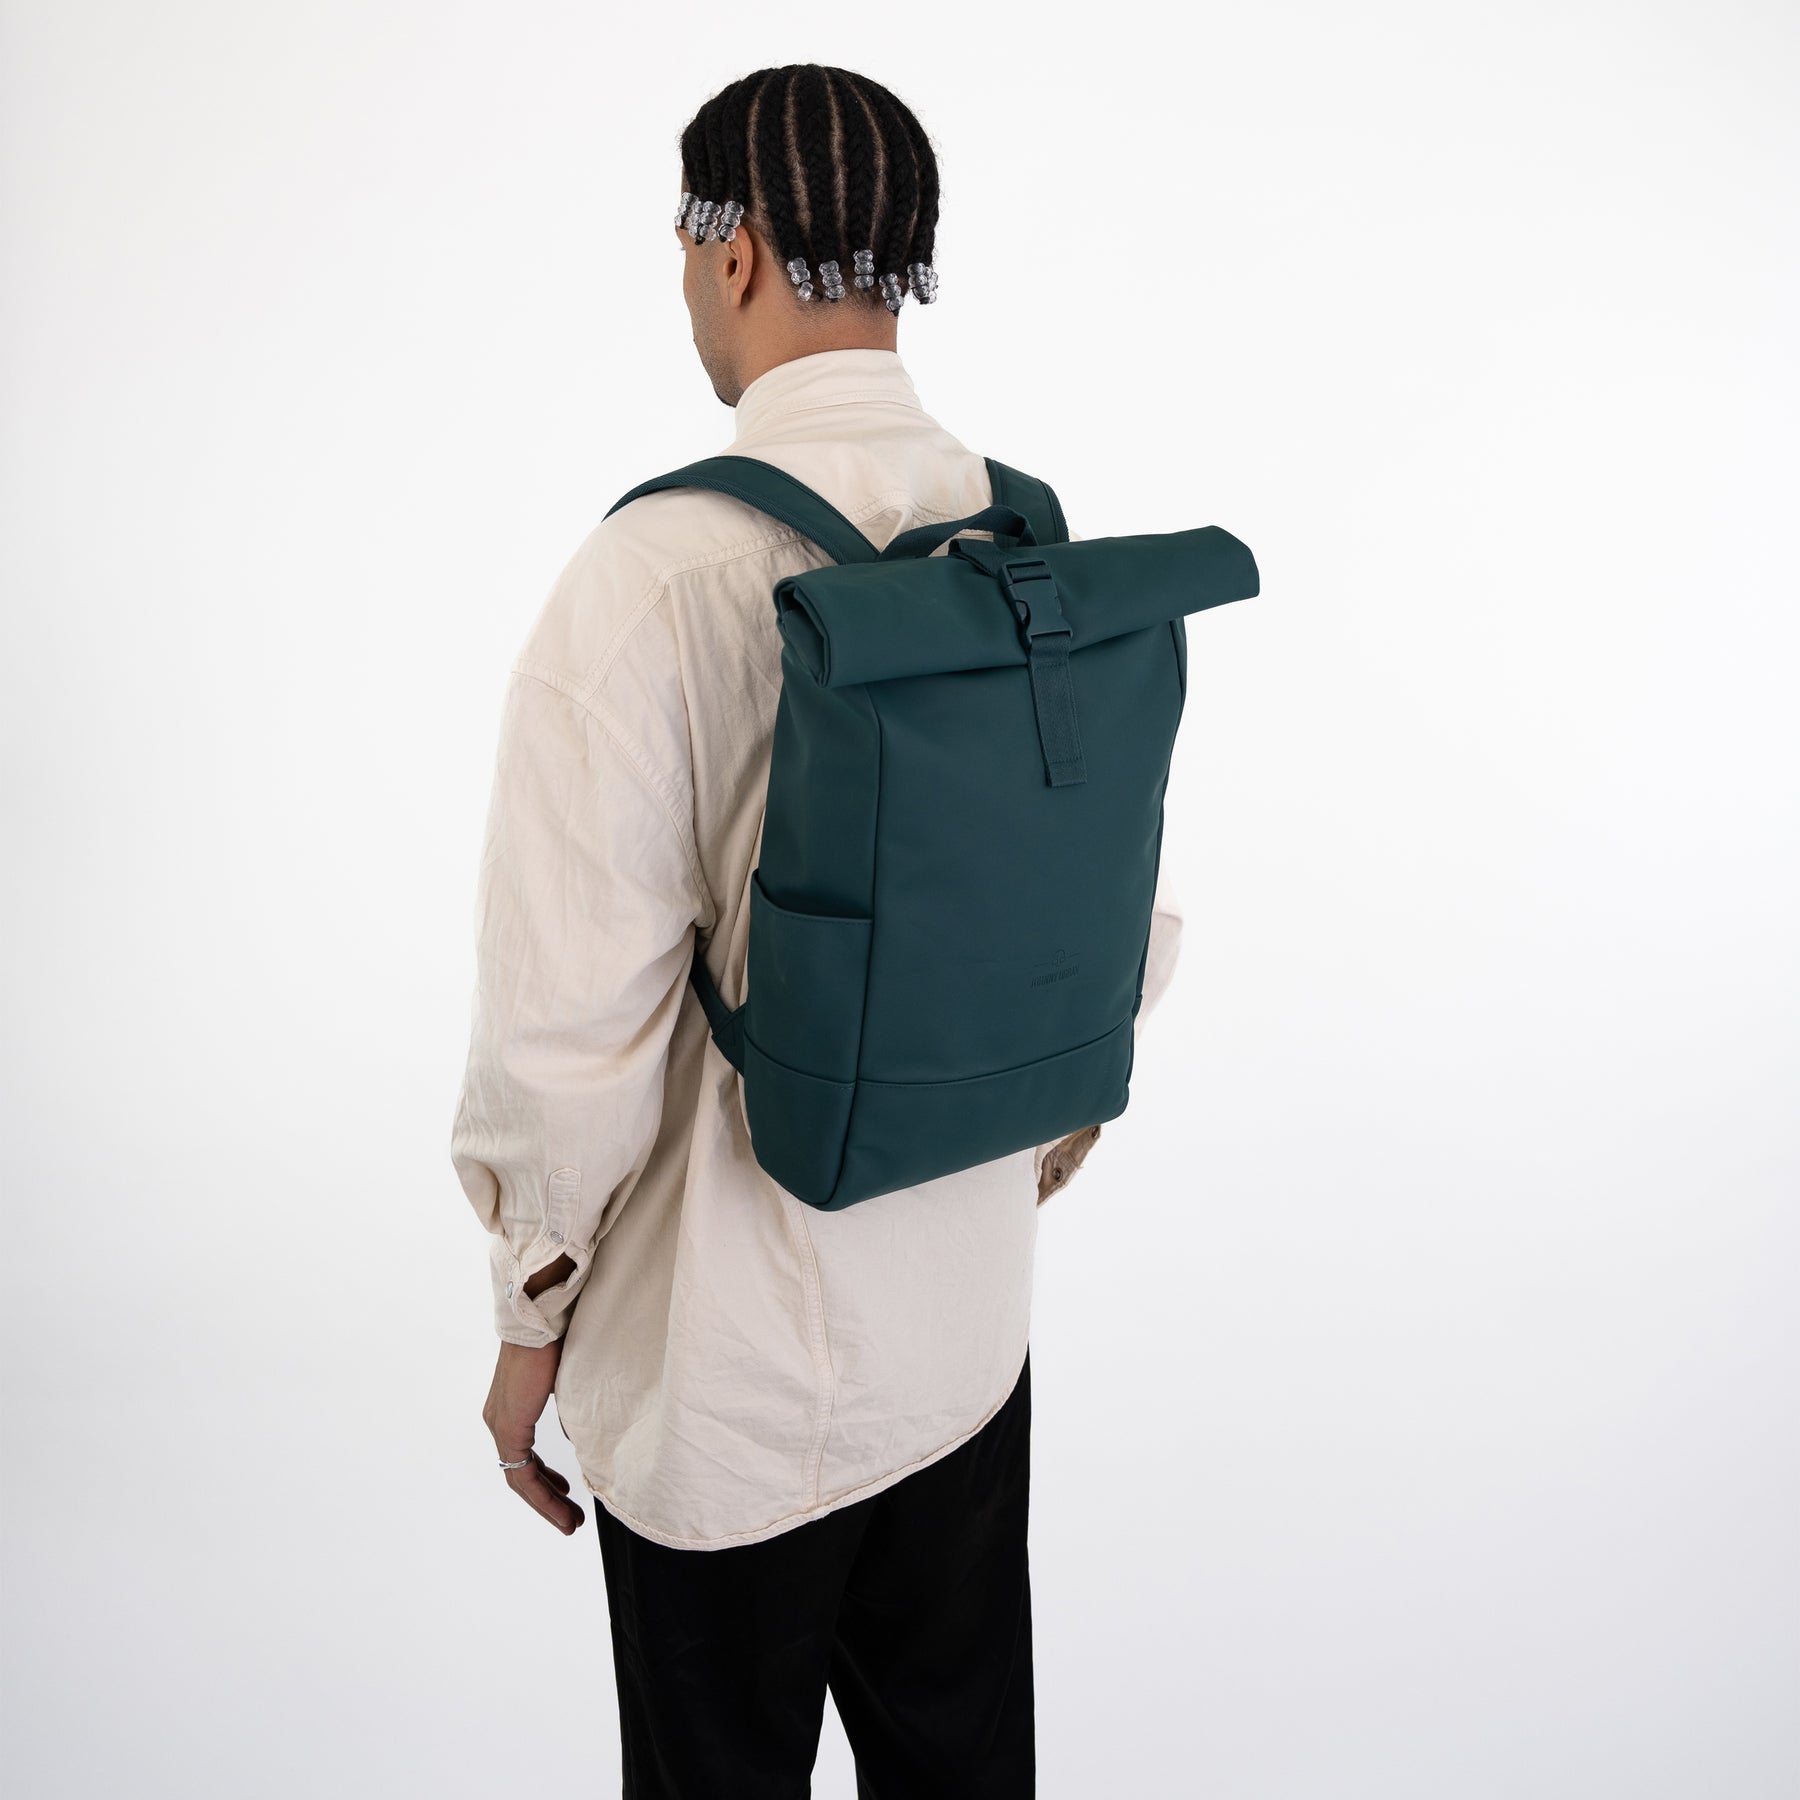 Rolltop backpack "Harvey Medium"